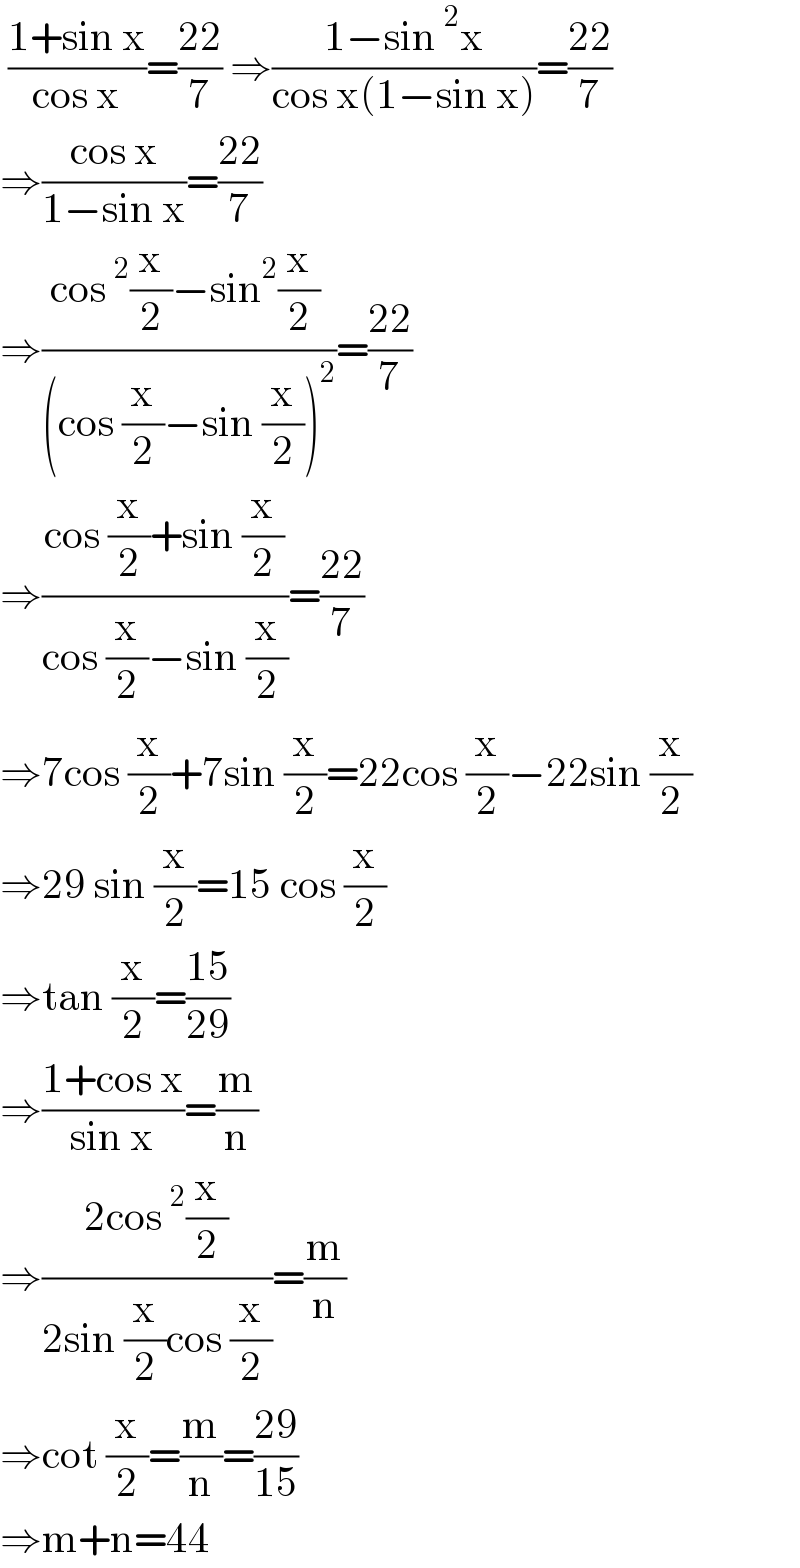  ((1+sin x)/(cos x))=((22)/7) ⇒((1−sin^2 x)/(cos x(1−sin x)))=((22)/7)  ⇒((cos x)/(1−sin x))=((22)/7)  ⇒((cos^2 (x/2)−sin^2 (x/2) )/((cos (x/2)−sin (x/2))^2 ))=((22)/7)  ⇒((cos (x/2)+sin (x/2))/(cos (x/2)−sin (x/2)))=((22)/7)  ⇒7cos (x/2)+7sin (x/2)=22cos (x/2)−22sin (x/2)  ⇒29 sin (x/2)=15 cos (x/2)  ⇒tan (x/2)=((15)/(29))  ⇒((1+cos x)/(sin x))=(m/n)  ⇒((2cos^2 (x/2))/(2sin (x/2)cos (x/2)))=(m/n)  ⇒cot (x/2)=(m/n)=((29)/(15))  ⇒m+n=44  